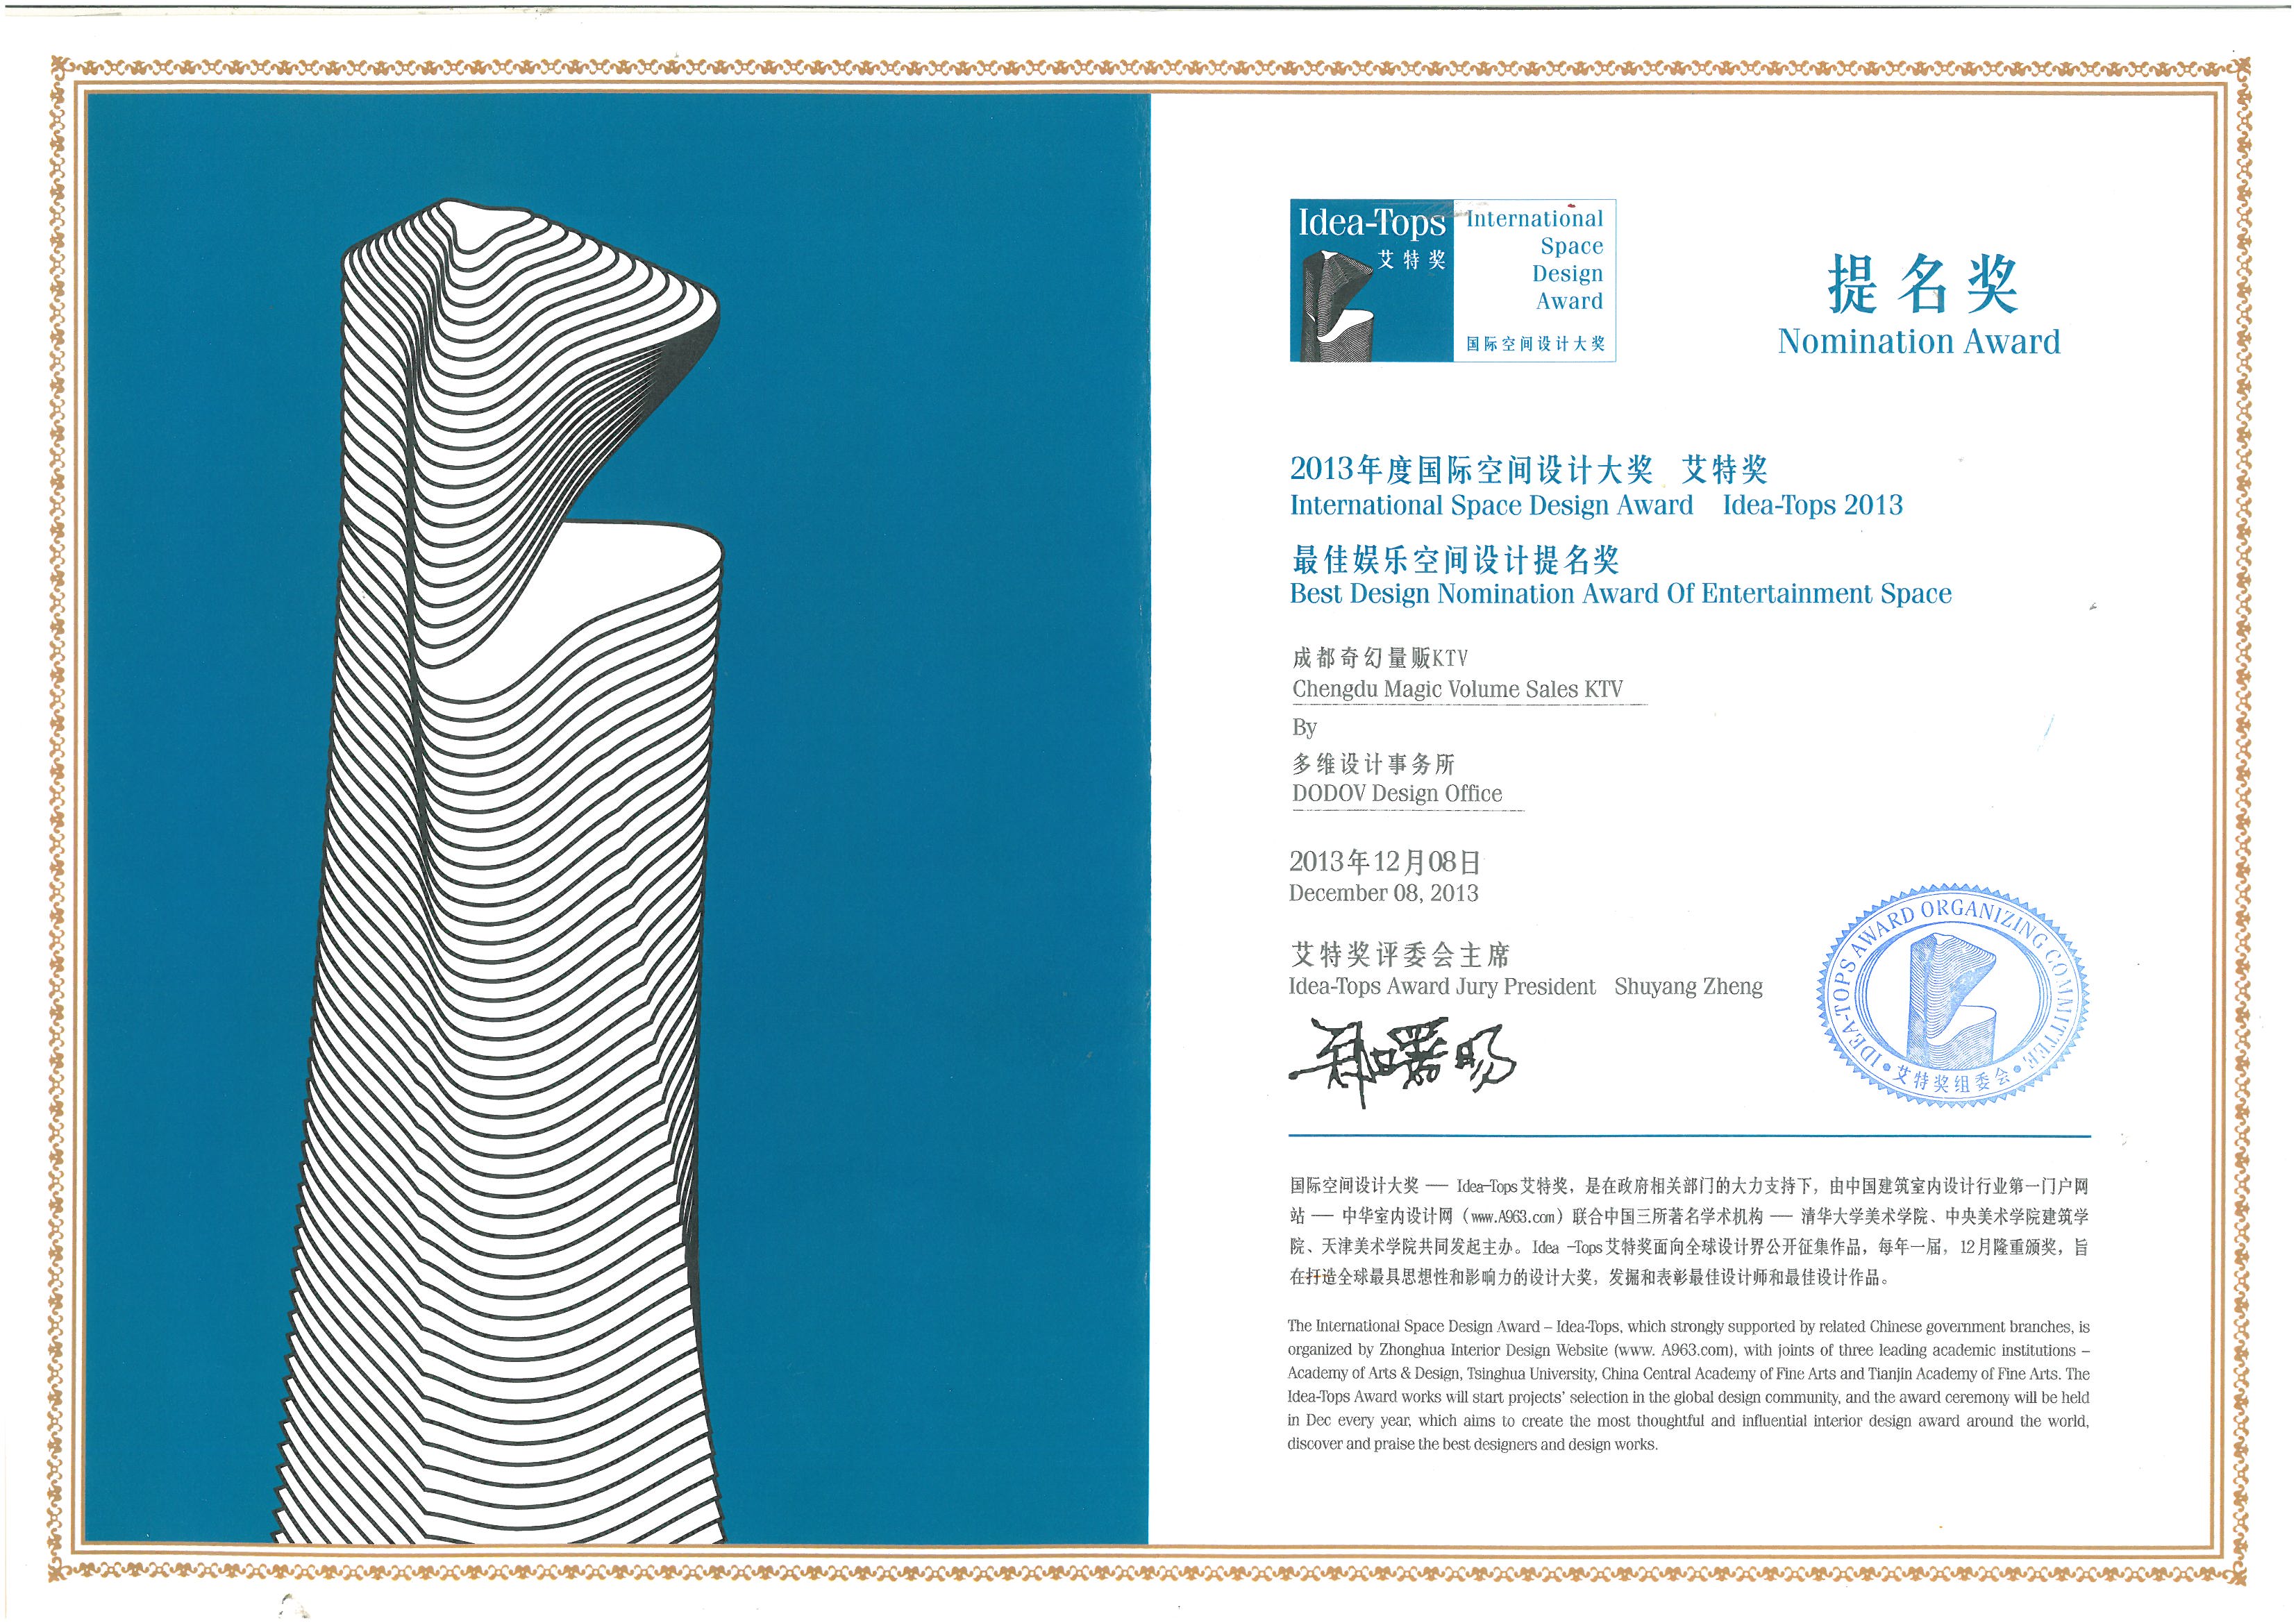 2013年度国际空间设计大奖艾特奖最佳娱乐空间设计提名奖：成都奇幻KTV